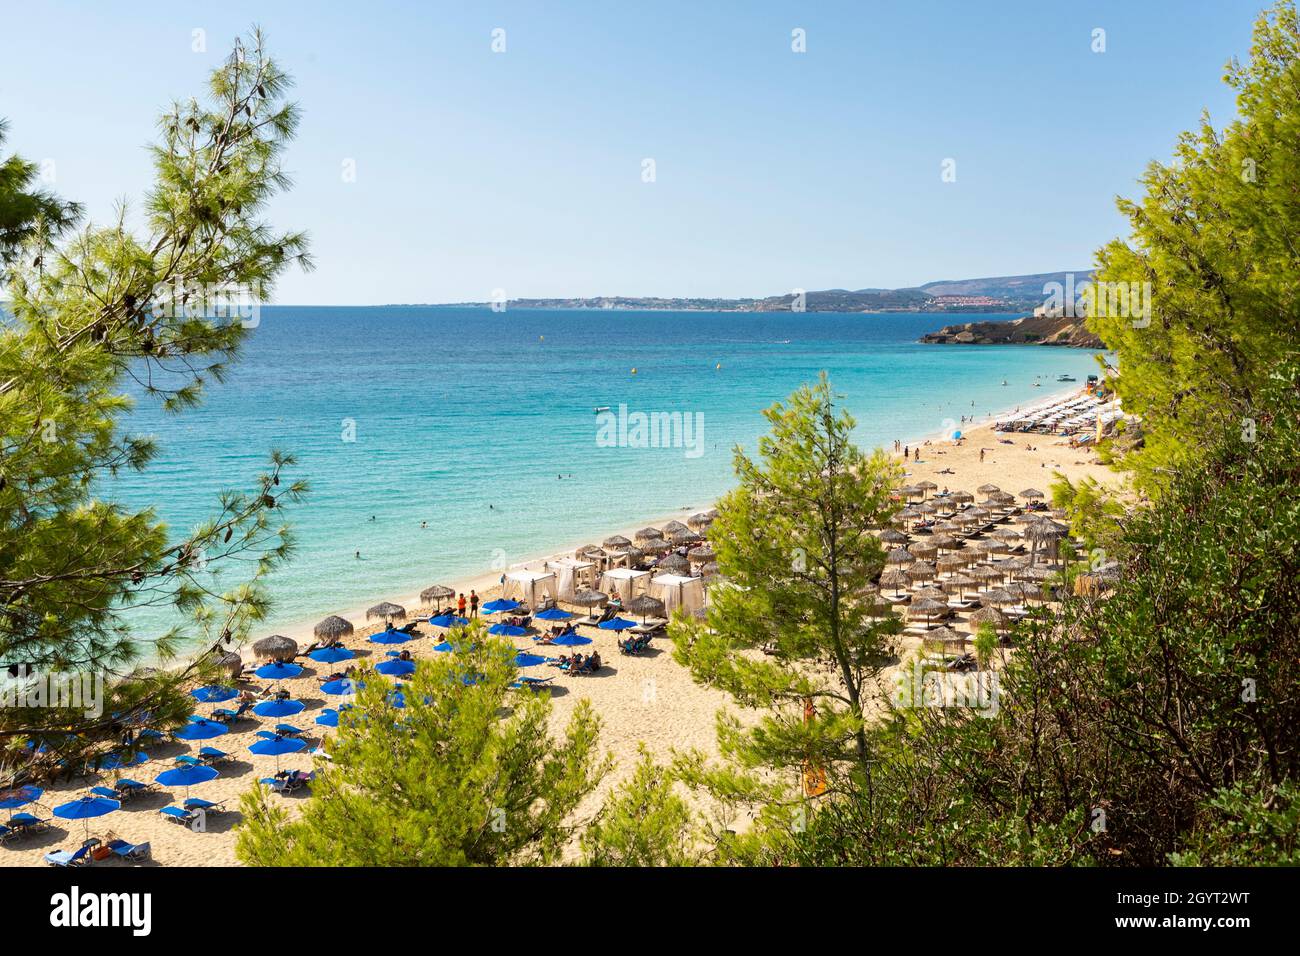 Vista de la playa Makris Gialos a través de árboles, cerca de Argostoli, Kefalonia, Islas Jónicas, Grecia Foto de stock